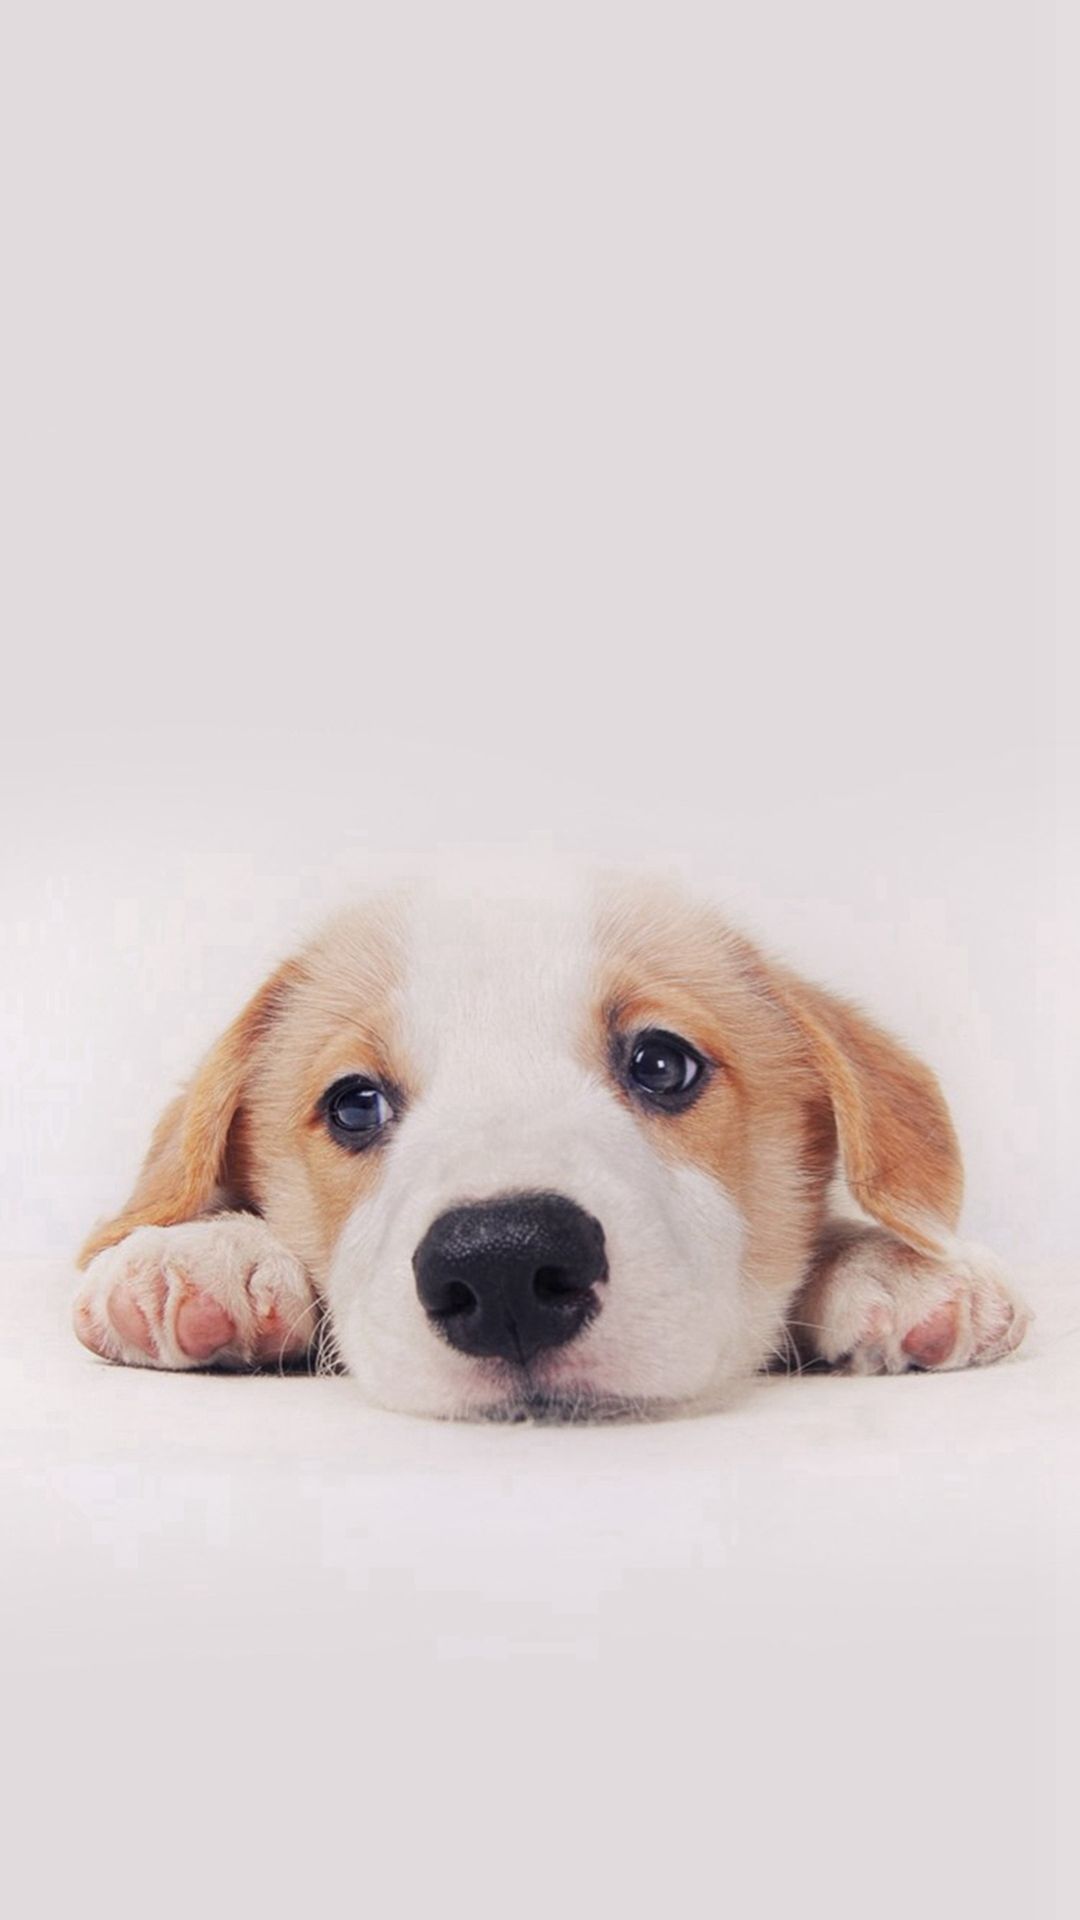 Ảnh cún con siêu cute hình ảnh chó con ngộ nghĩnh dễ thương đáng yêu nhất